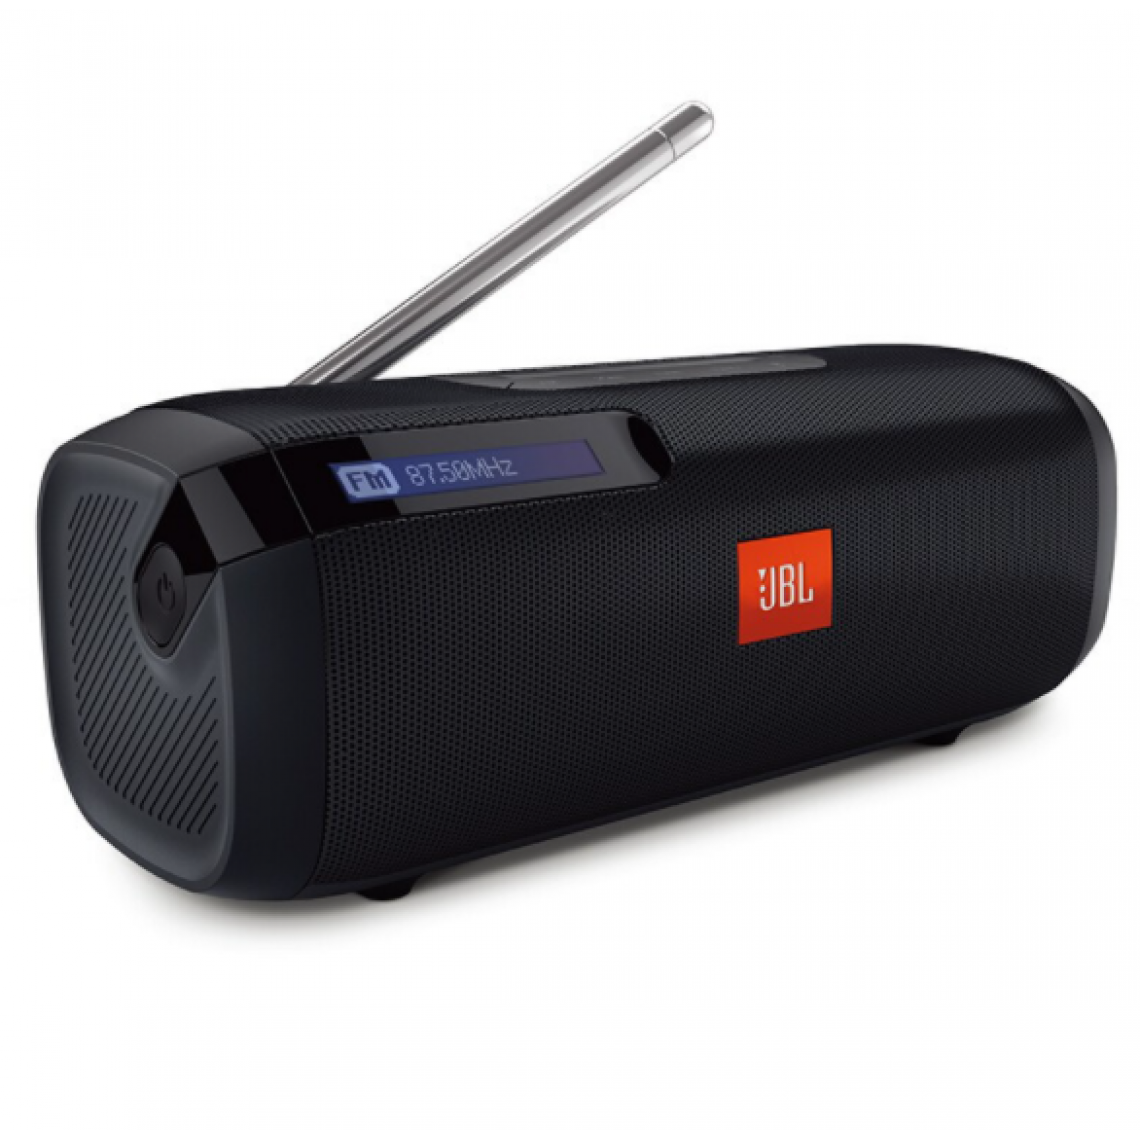 Chrono - JBL Tuner 2 radio portable-enceinte Bluetooth avec radio DAB et FM, 12 heures de musique sans filï¼Noir) - Enceintes Hifi